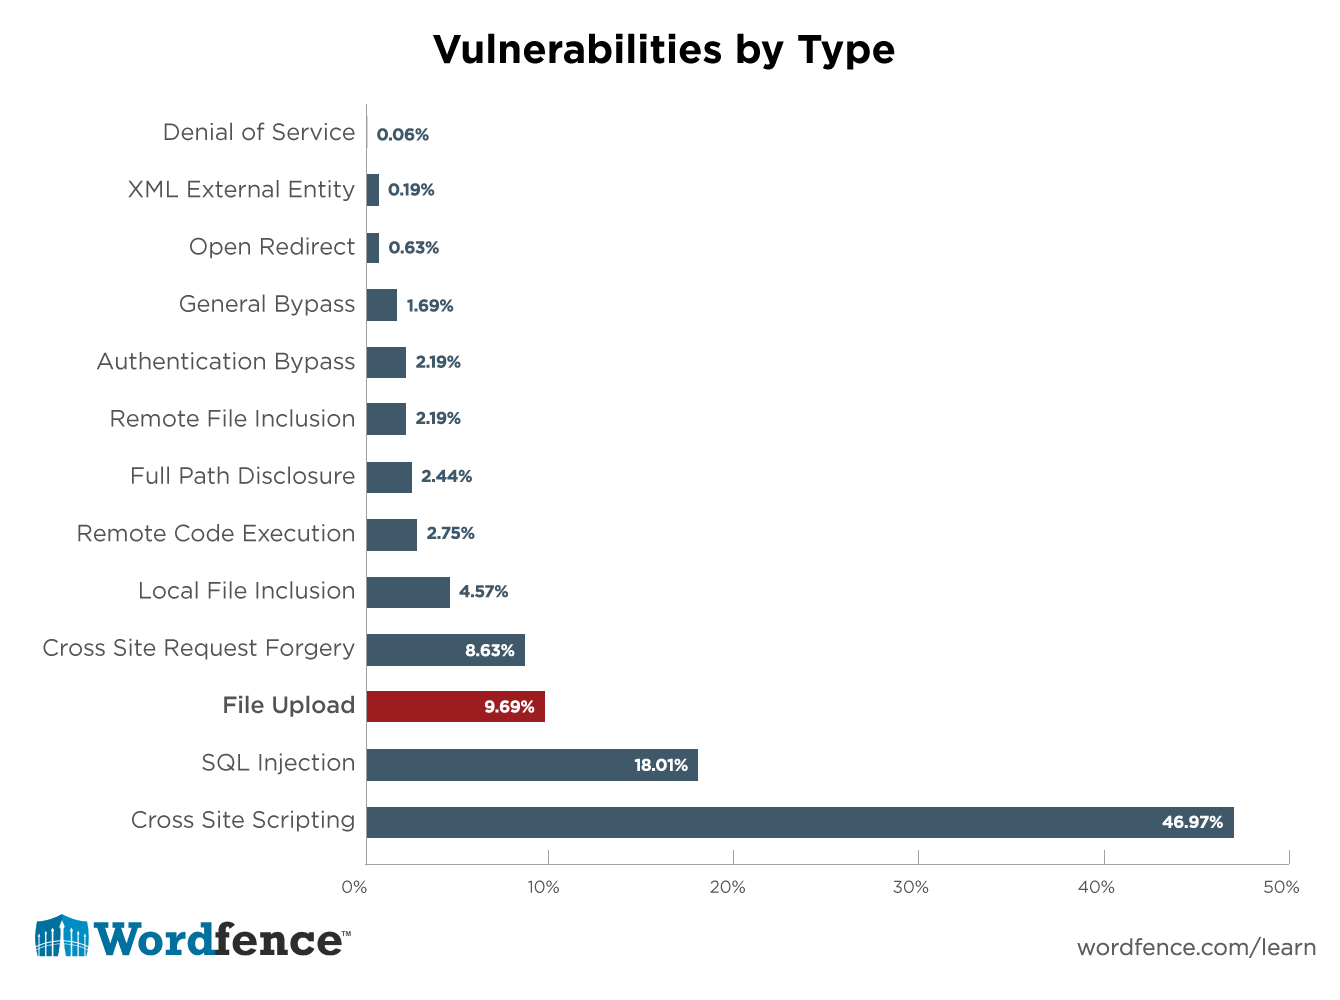 Уязвимости загрузки файлов являются третьим наиболее распространенным типом уязвимостей, который мы обнаружили в нашем анализе 1599 уязвимостей WordPress за 14 месяцев